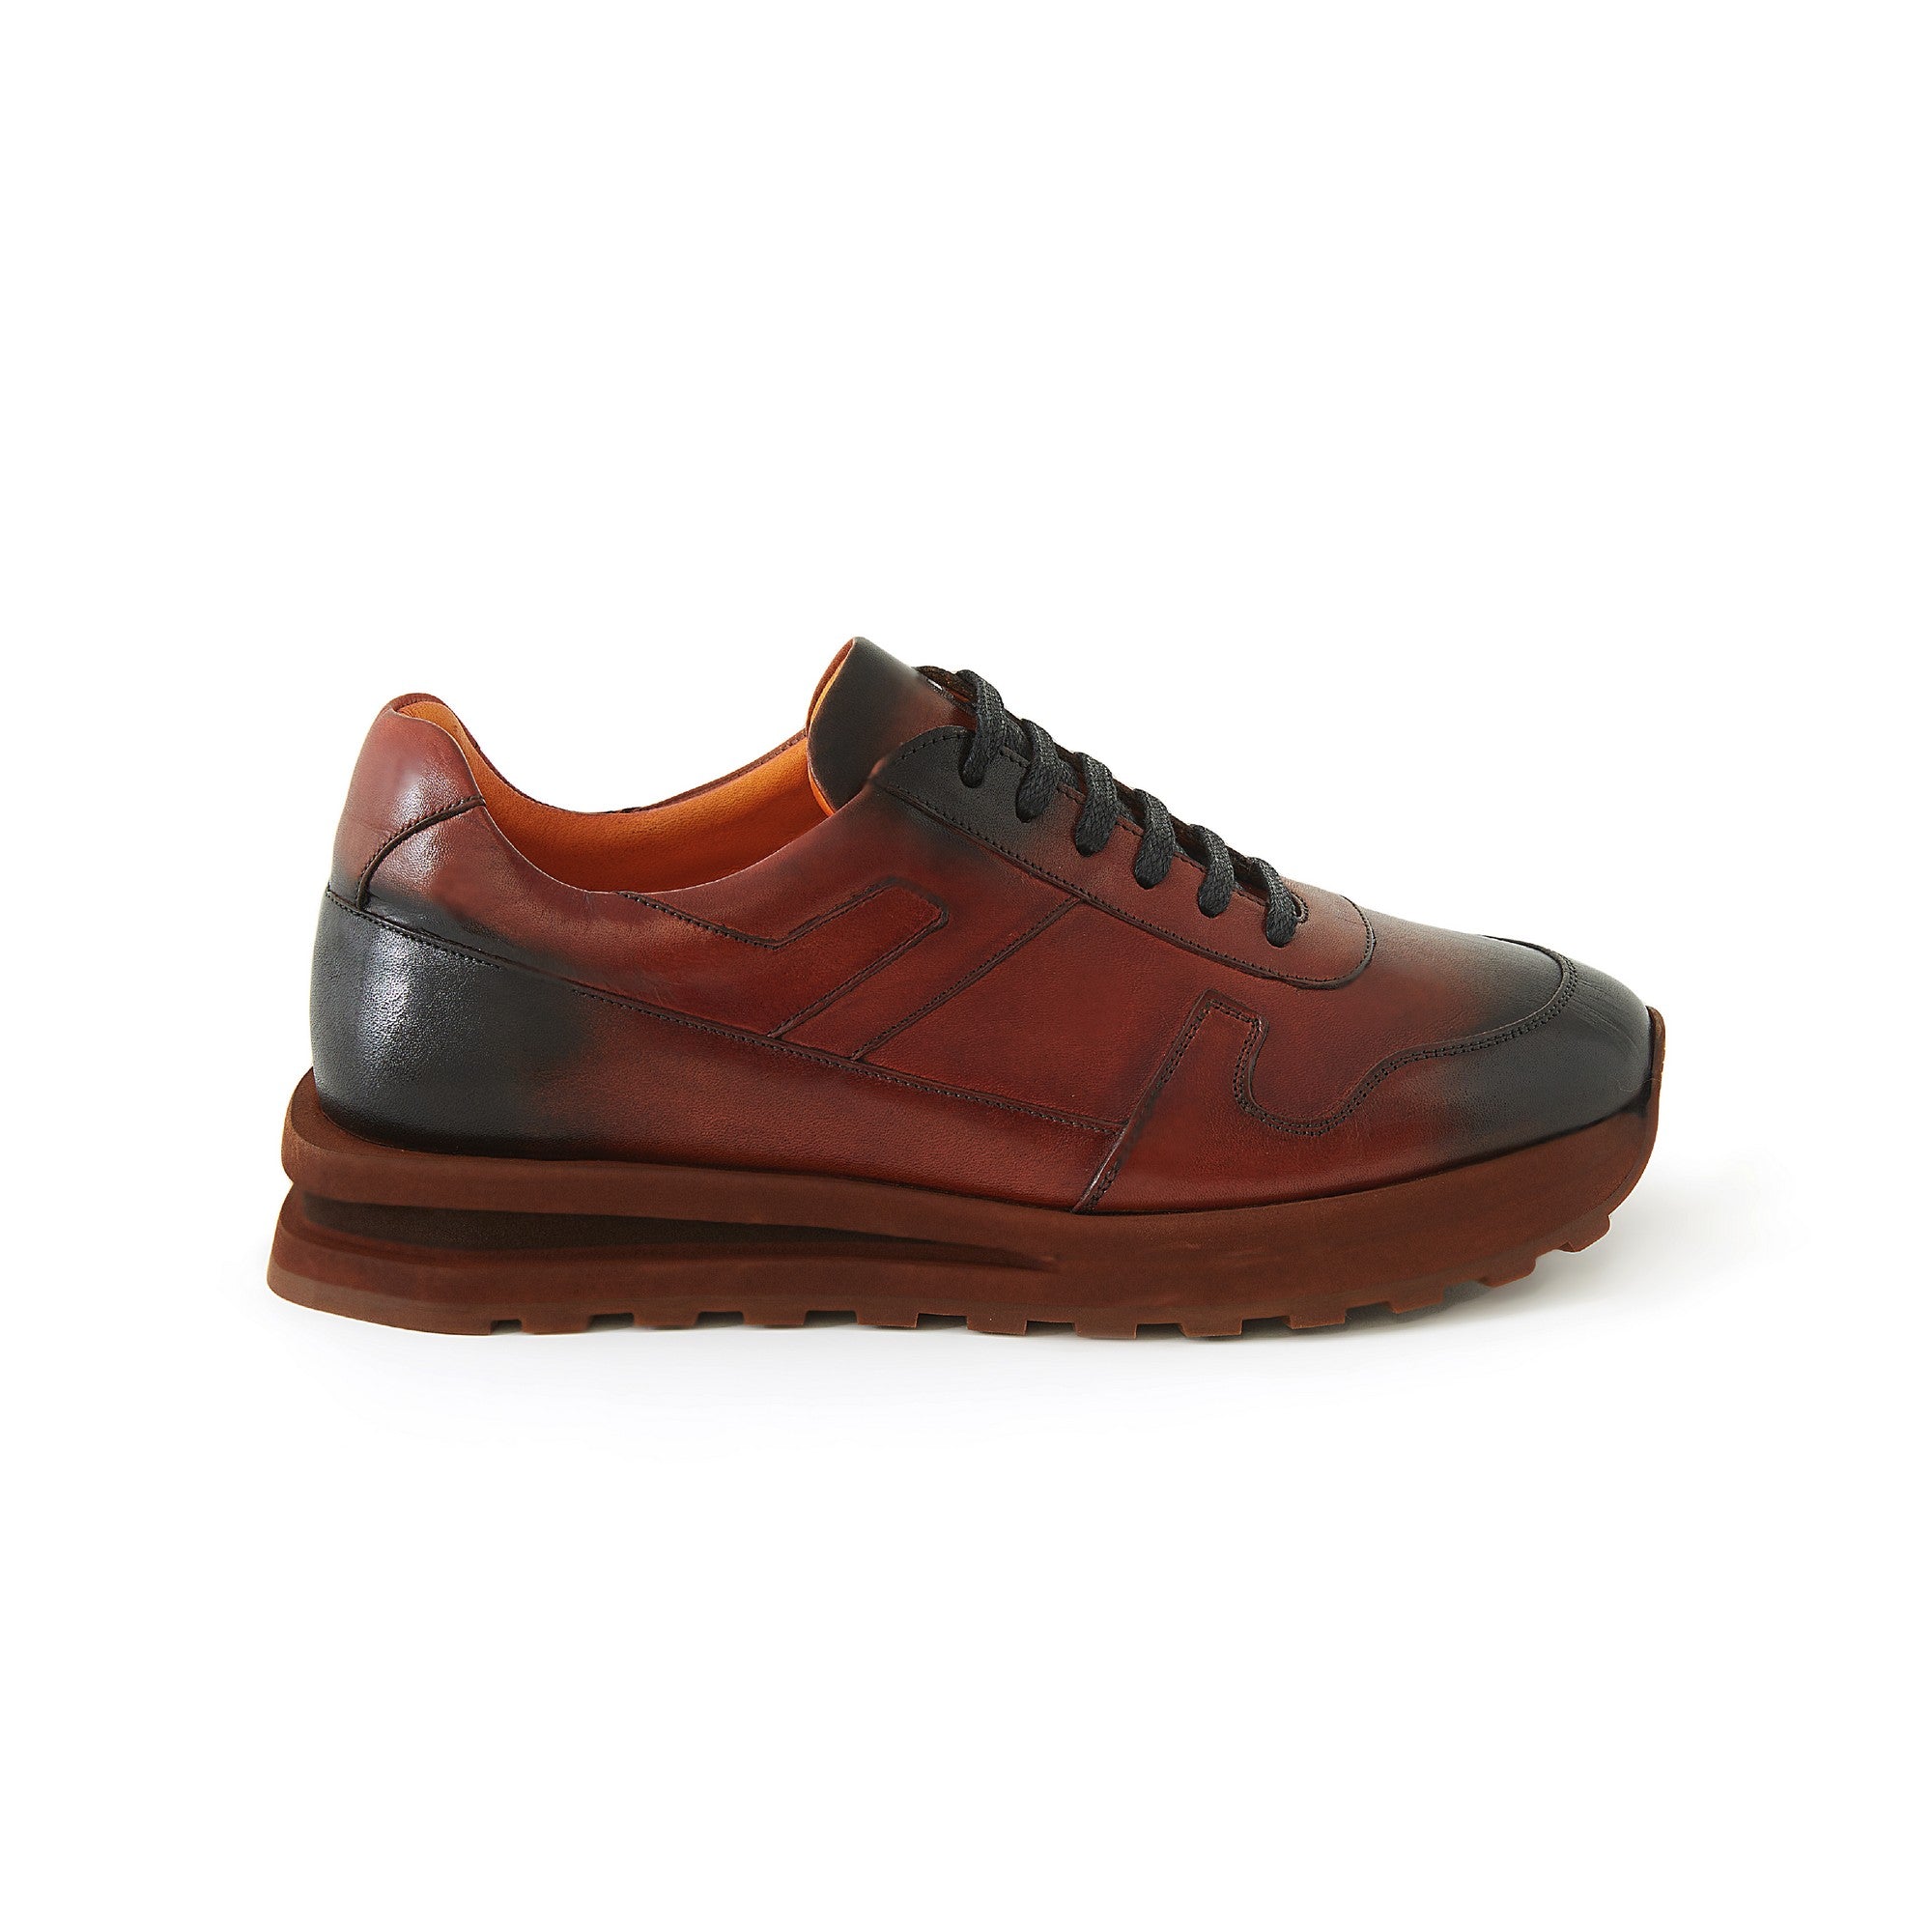 Men's Calf Leather Handmade Sneakers M8015